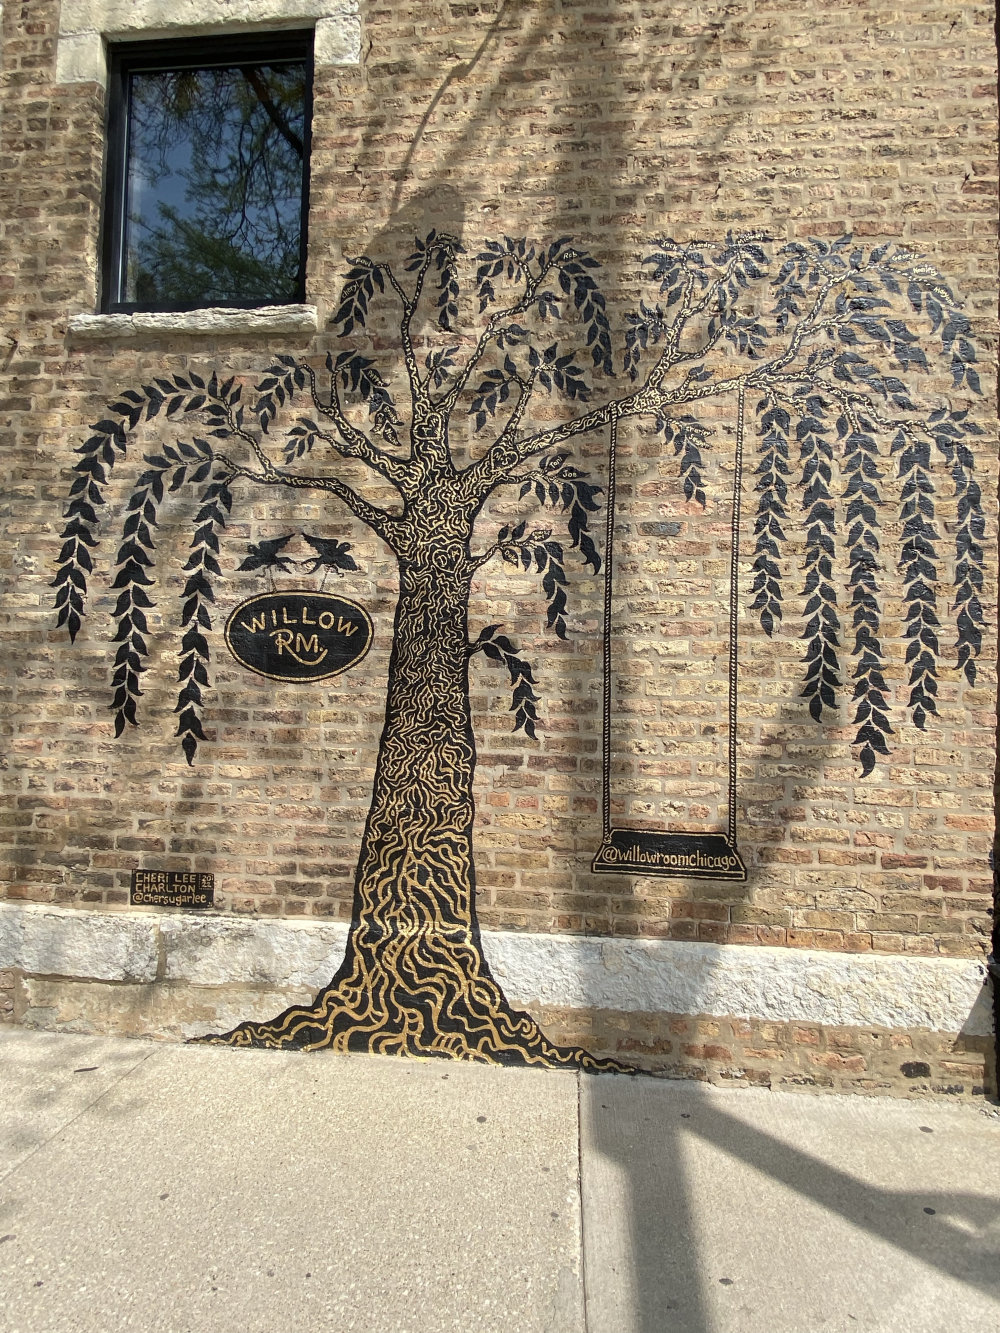 mural in Chicago by artist Cheri Lee Charlton.